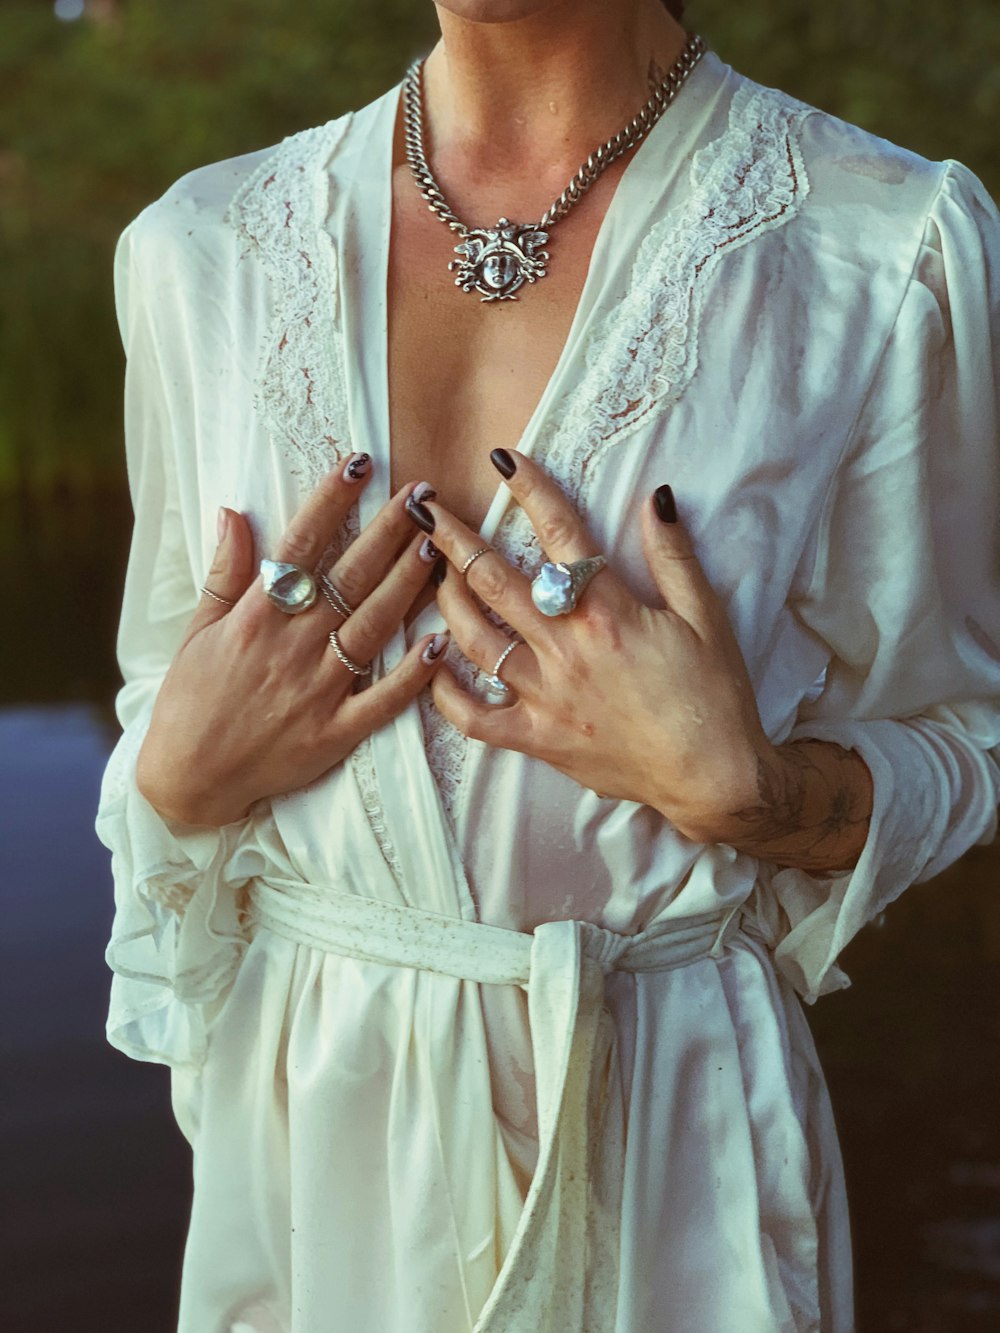 donna in abito bianco che indossa braccialetto d'argento